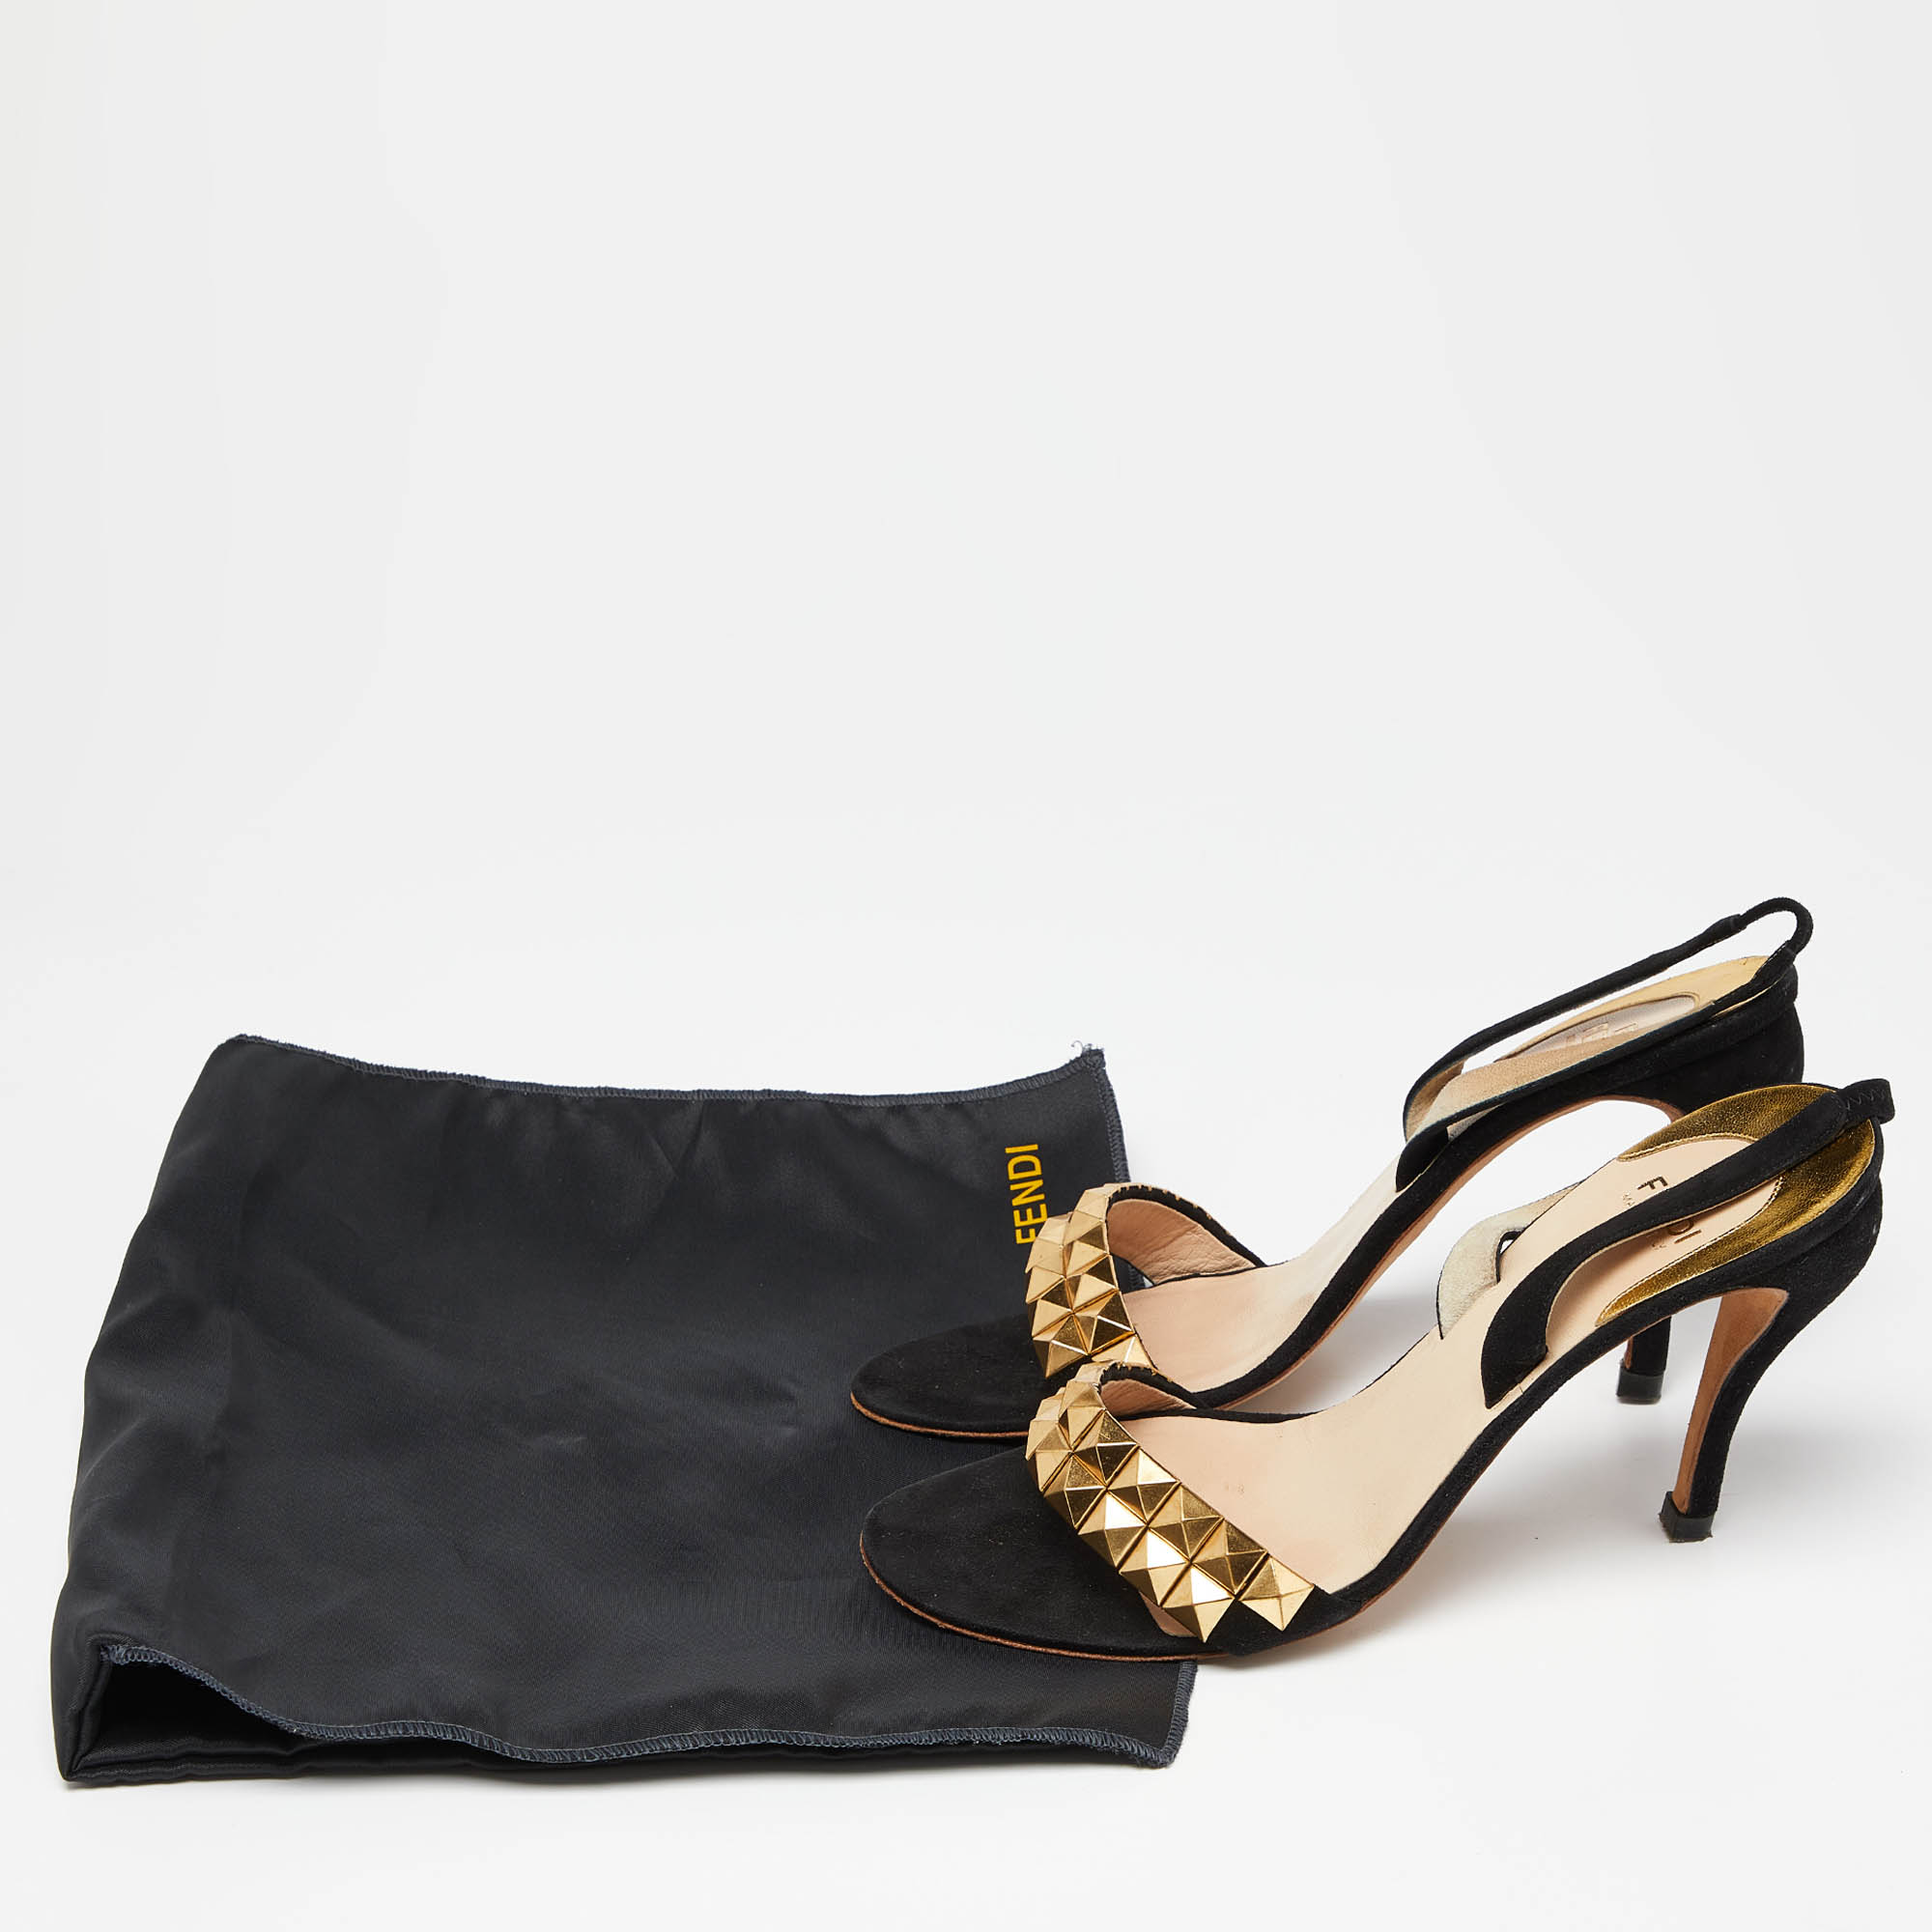 Fendi Black Suede Studded Slingback Sandals Size 39